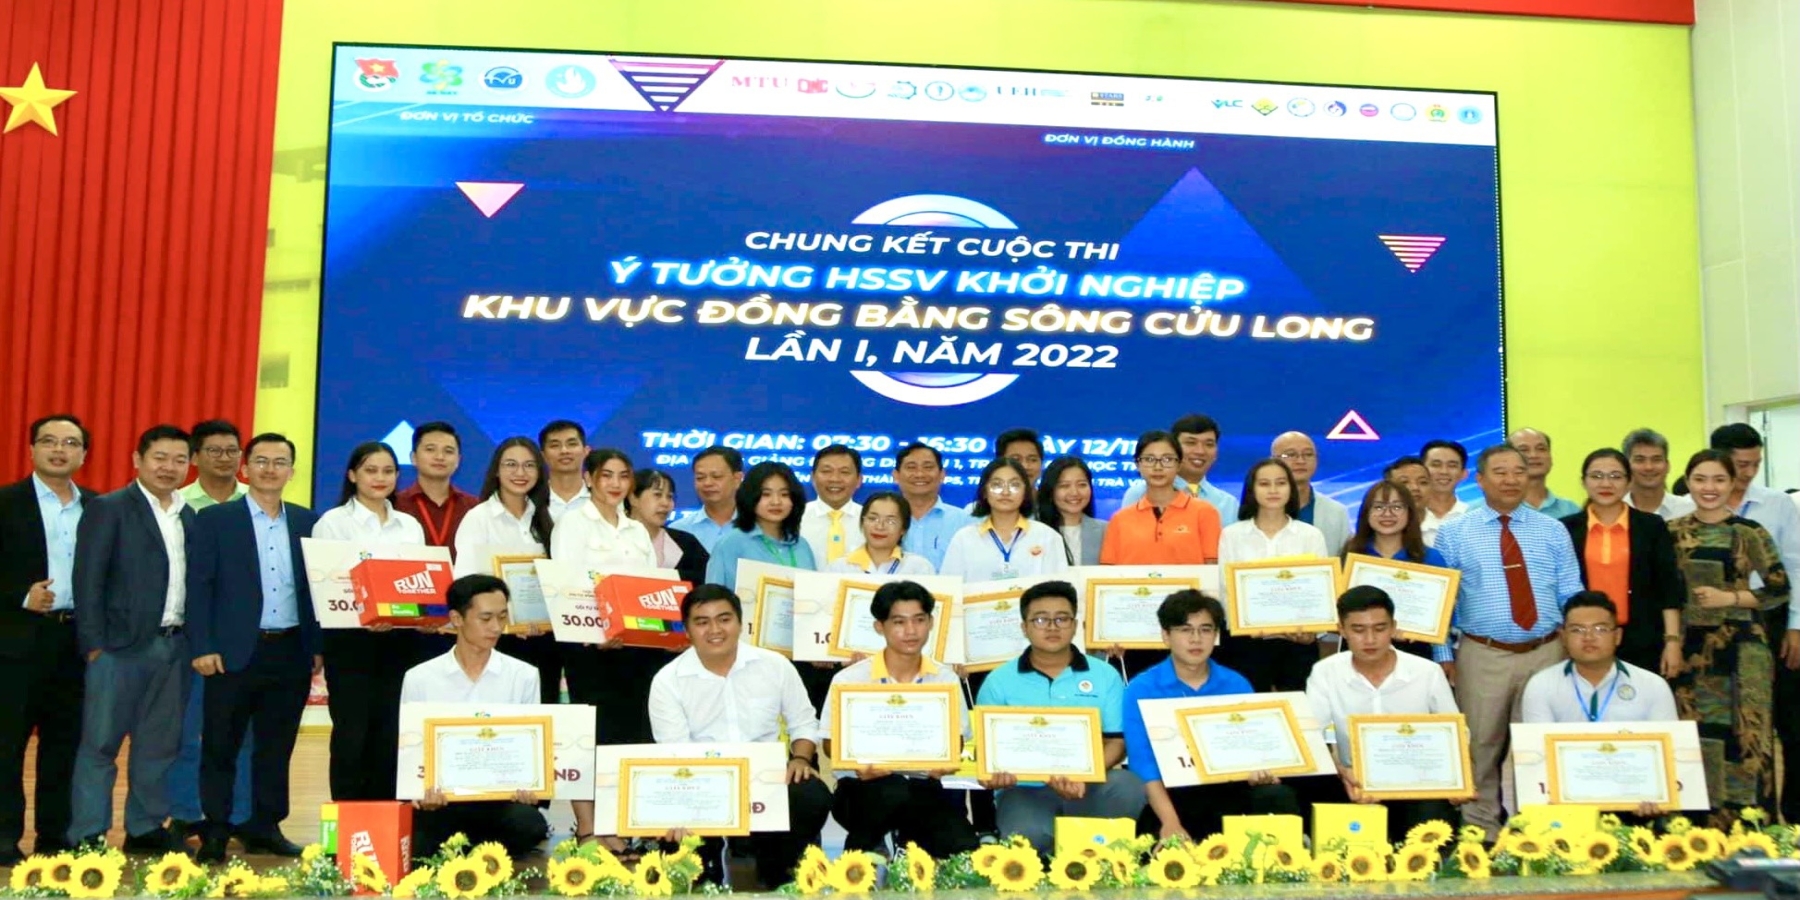 Sinh viên Trường ĐH Kiên Giang nhận Bằng khen của Chủ tịch UBND tỉnh Kiên Giang vì đạt thành tích xuất sắc trong Cuộc thi Khởi nghiệp đổi mới sáng tạo